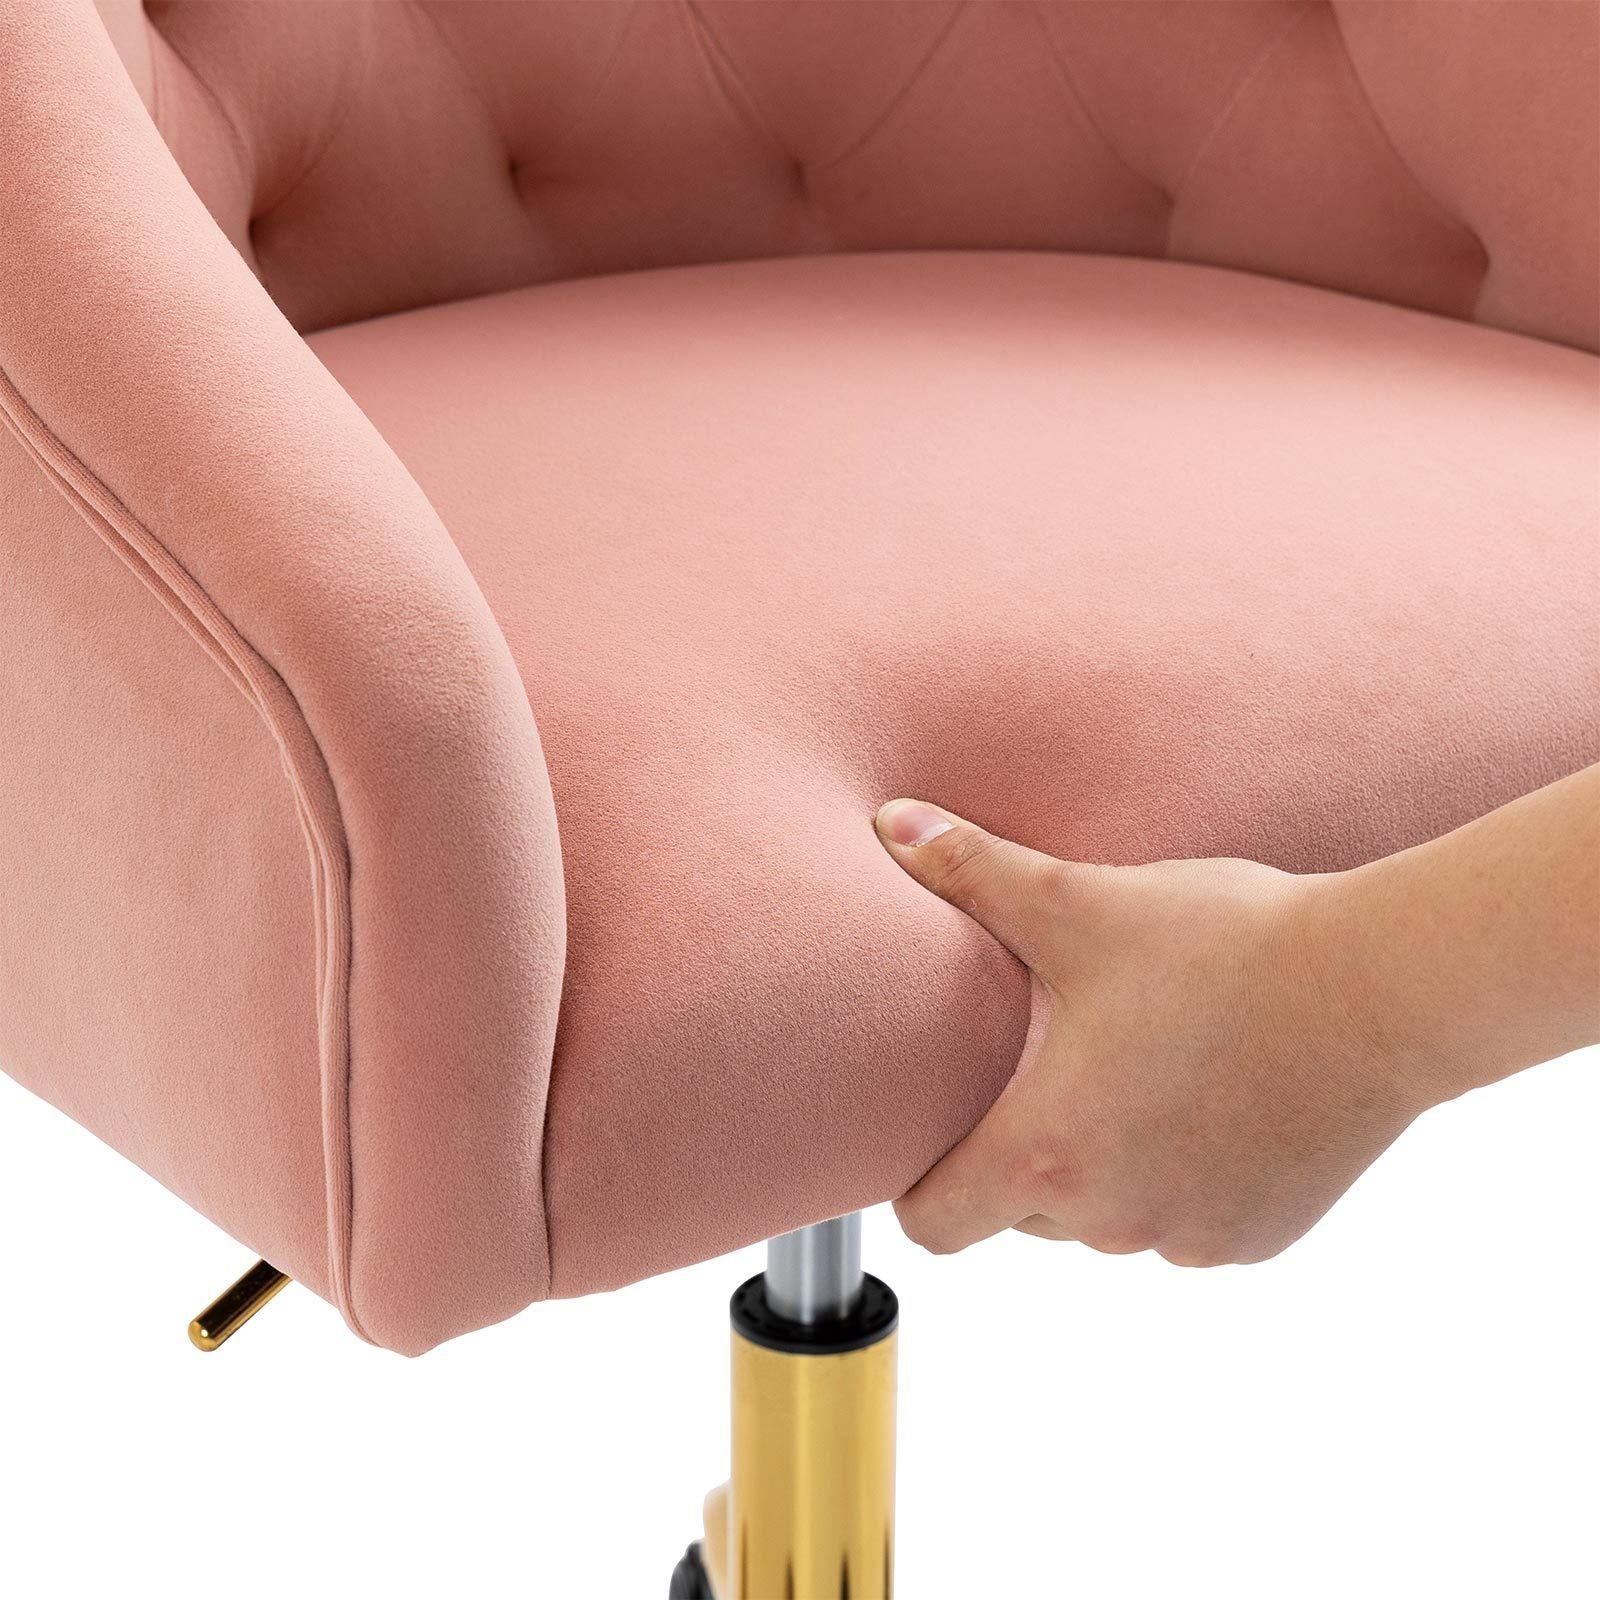 Modern Velvet Swivel Chair with Gold Feet - Pink